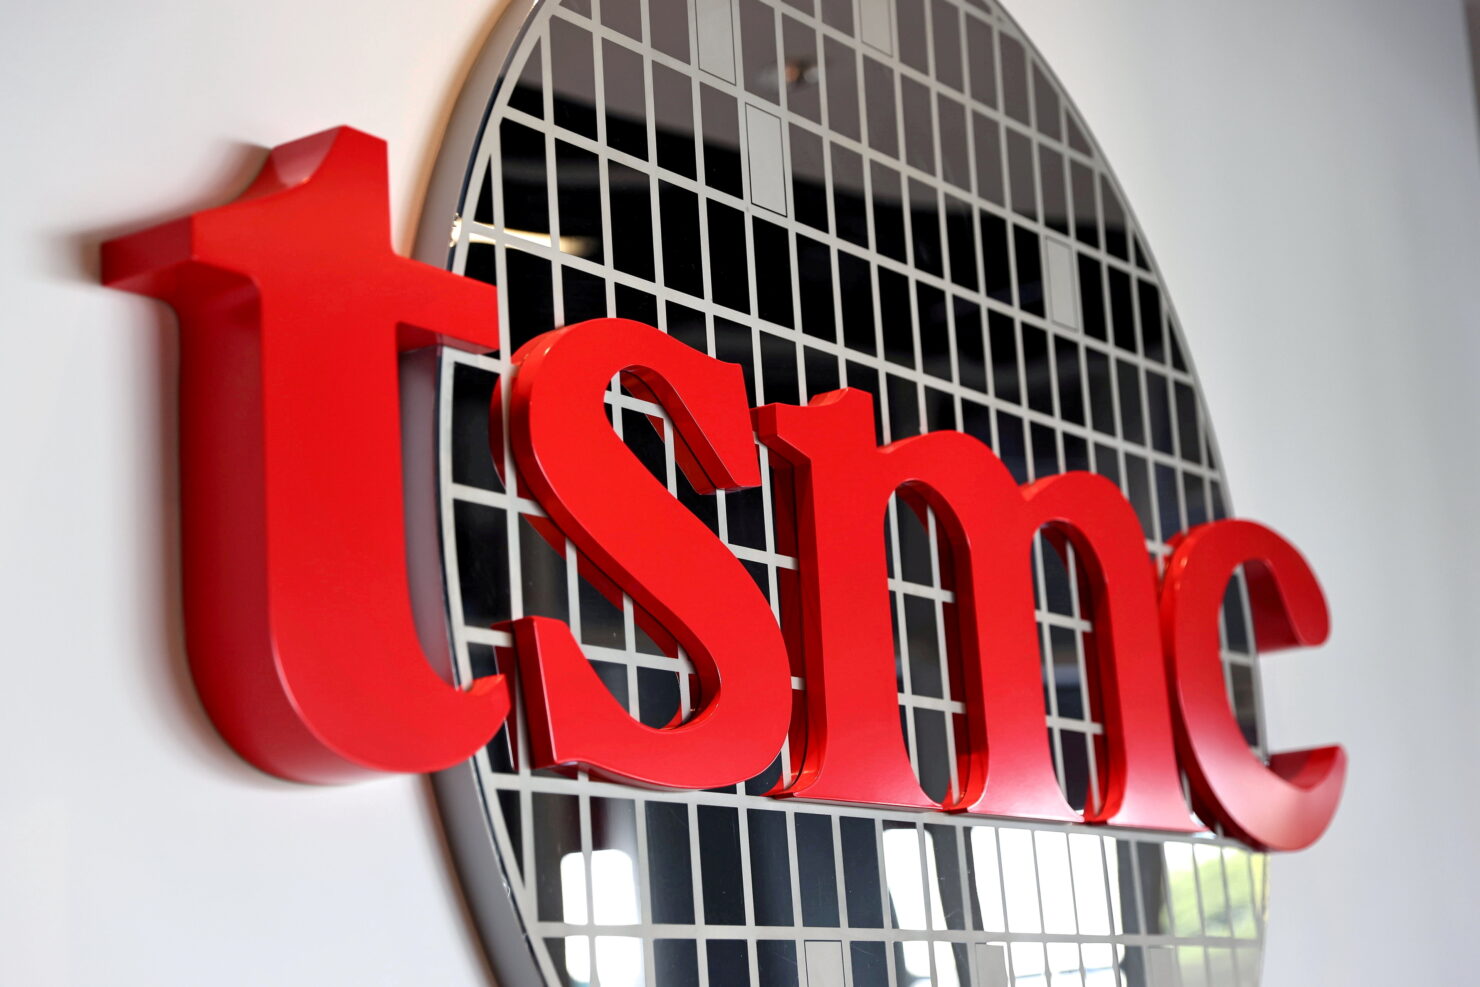 TSMC sichert sich laut Bericht 3-nm-Bestellungen von AMD, Qualcomm und anderen